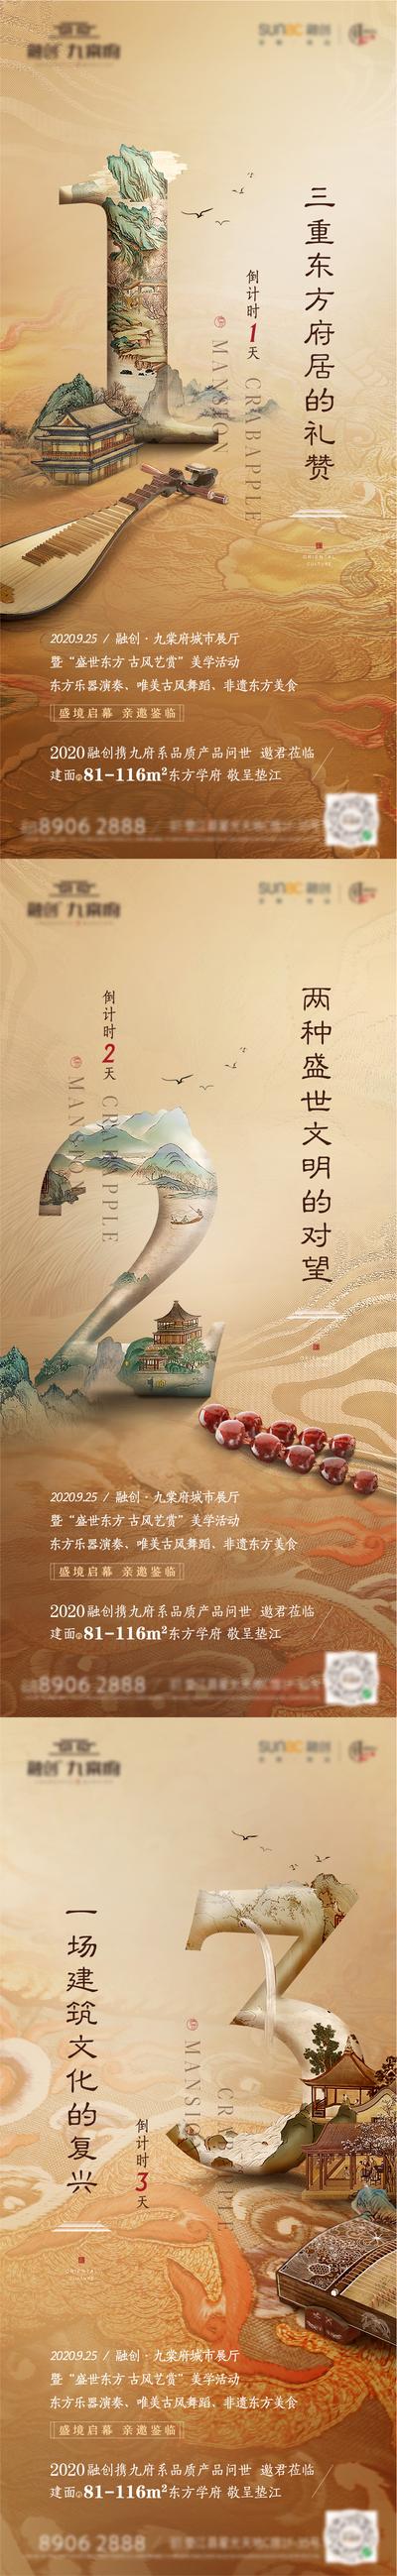 南门网 海报 地产 系列 中式 新中式 国风 新亚洲 国画 倒计时 数字